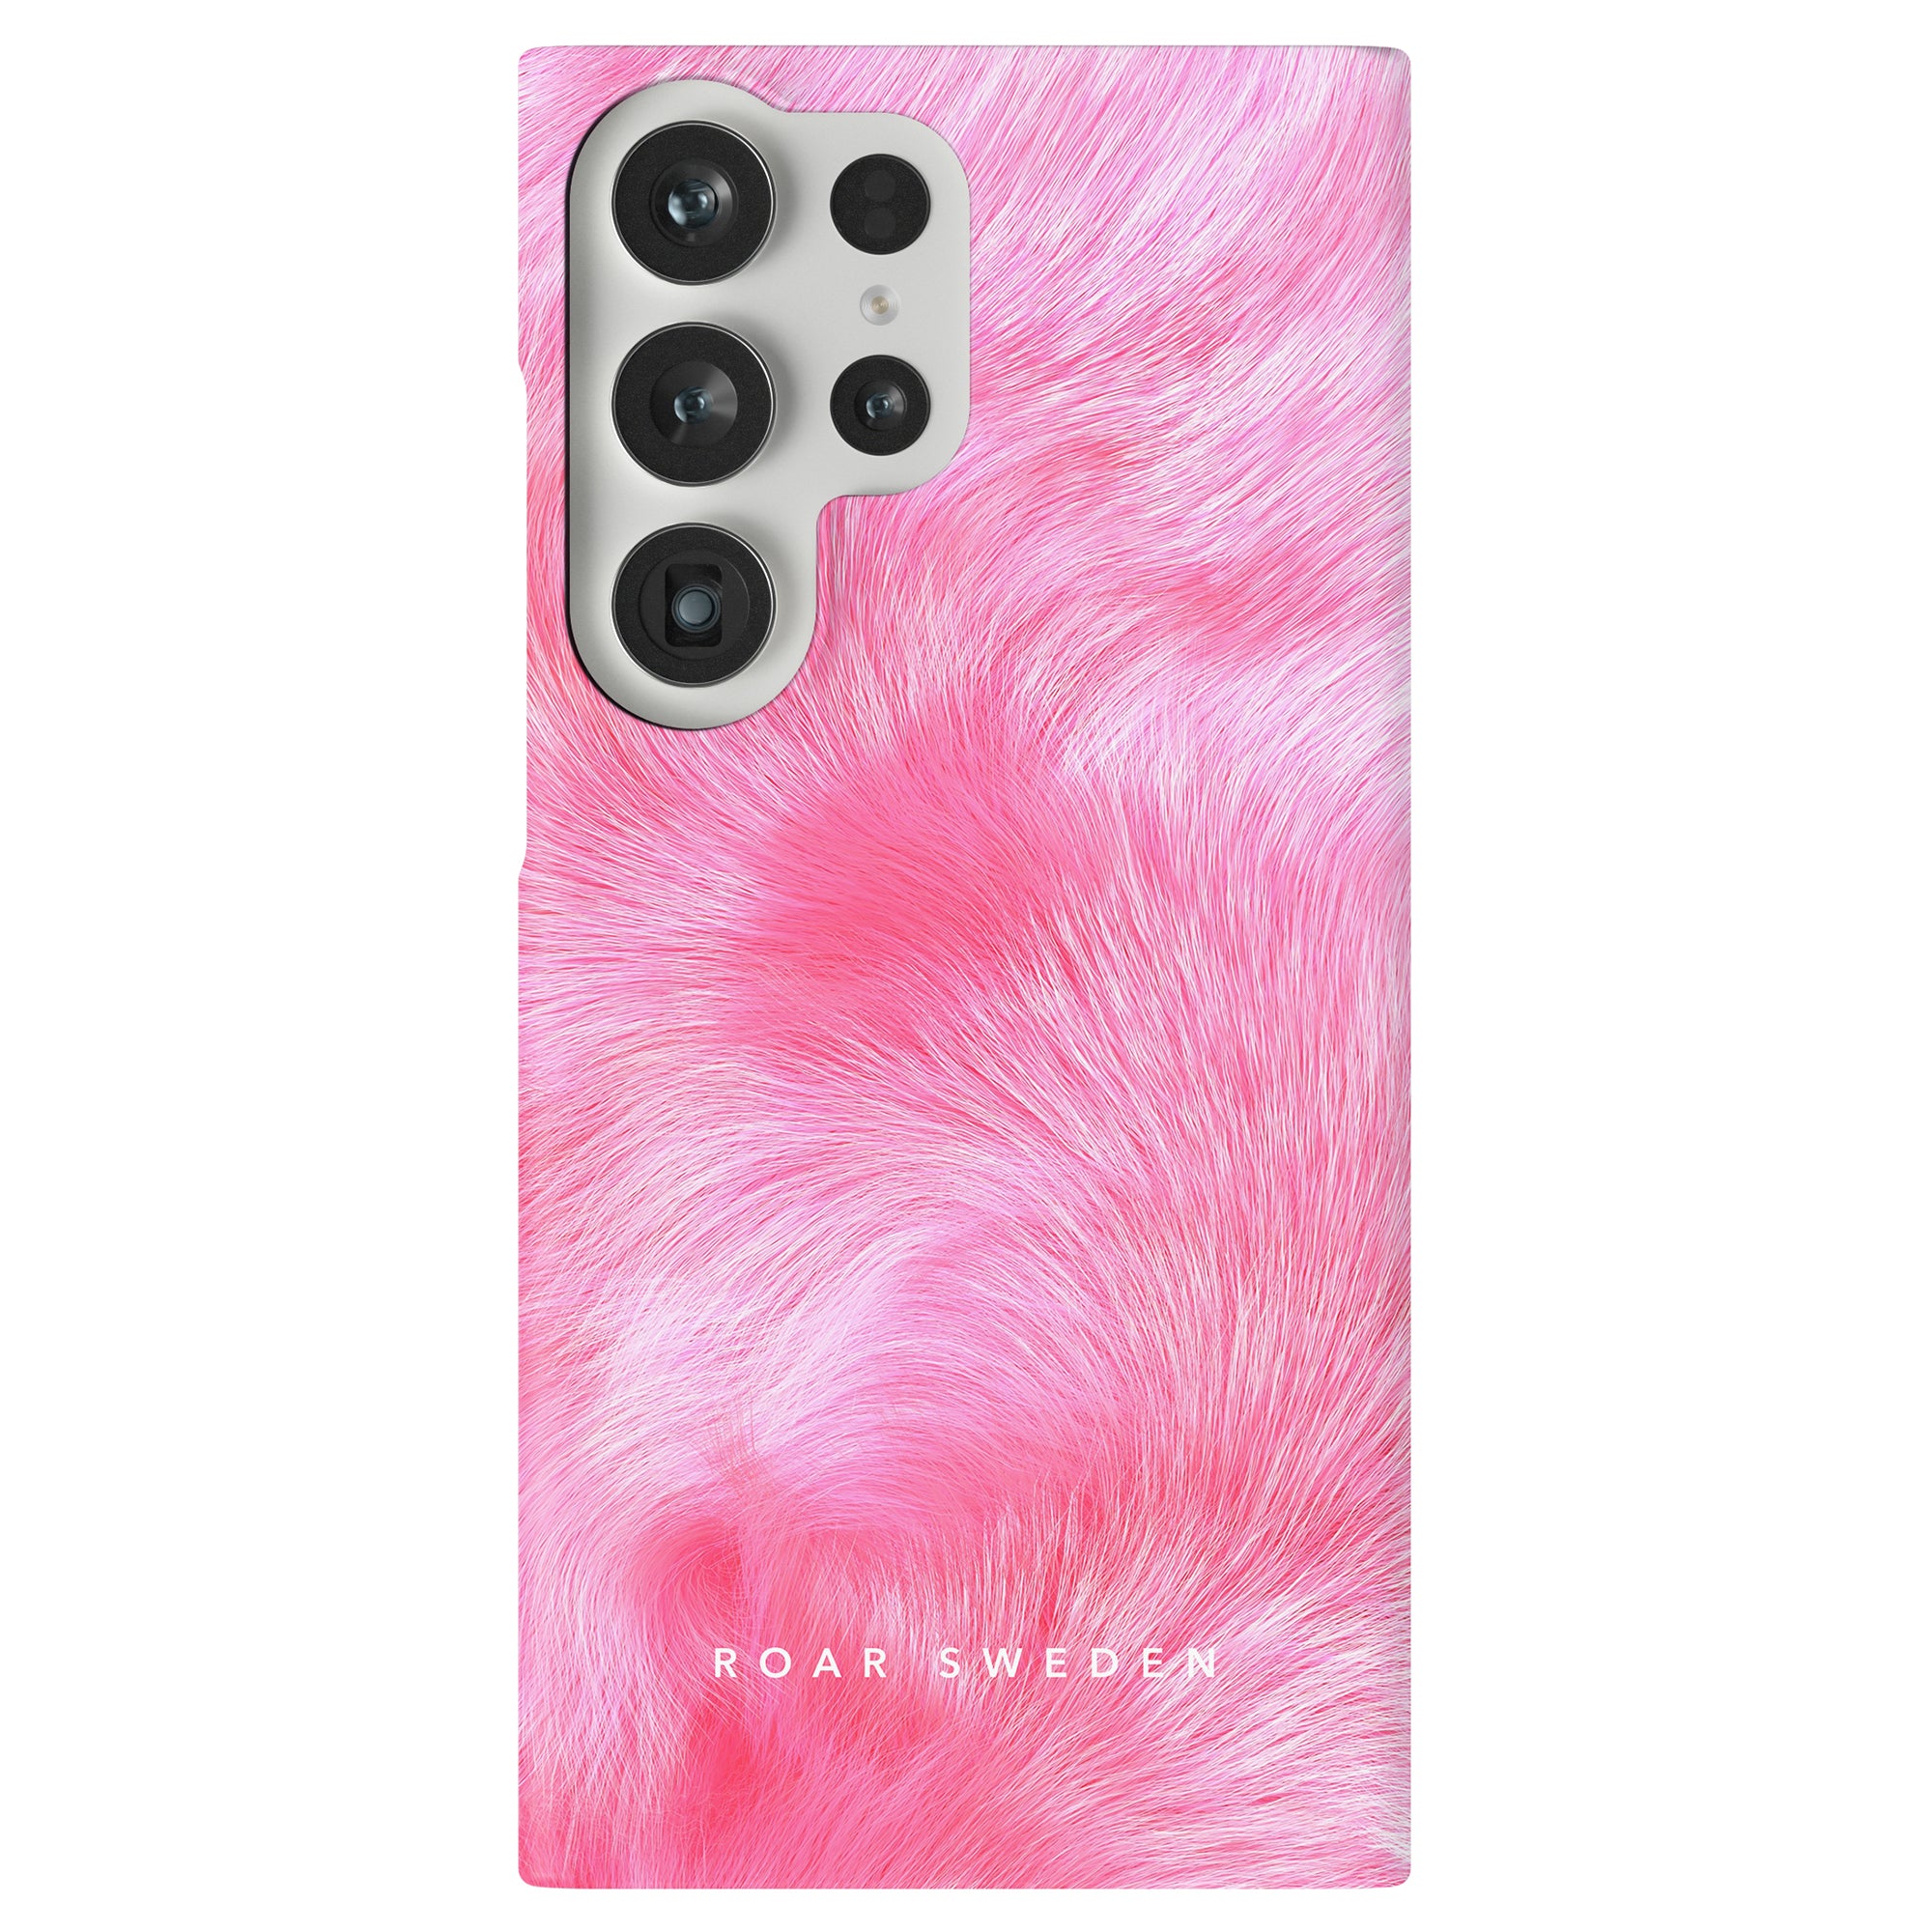 Hitta det perfekta rosa pälsiga fodralet för att skydda och stilisera din Samsung Galaxy S9 och S9 Plus.